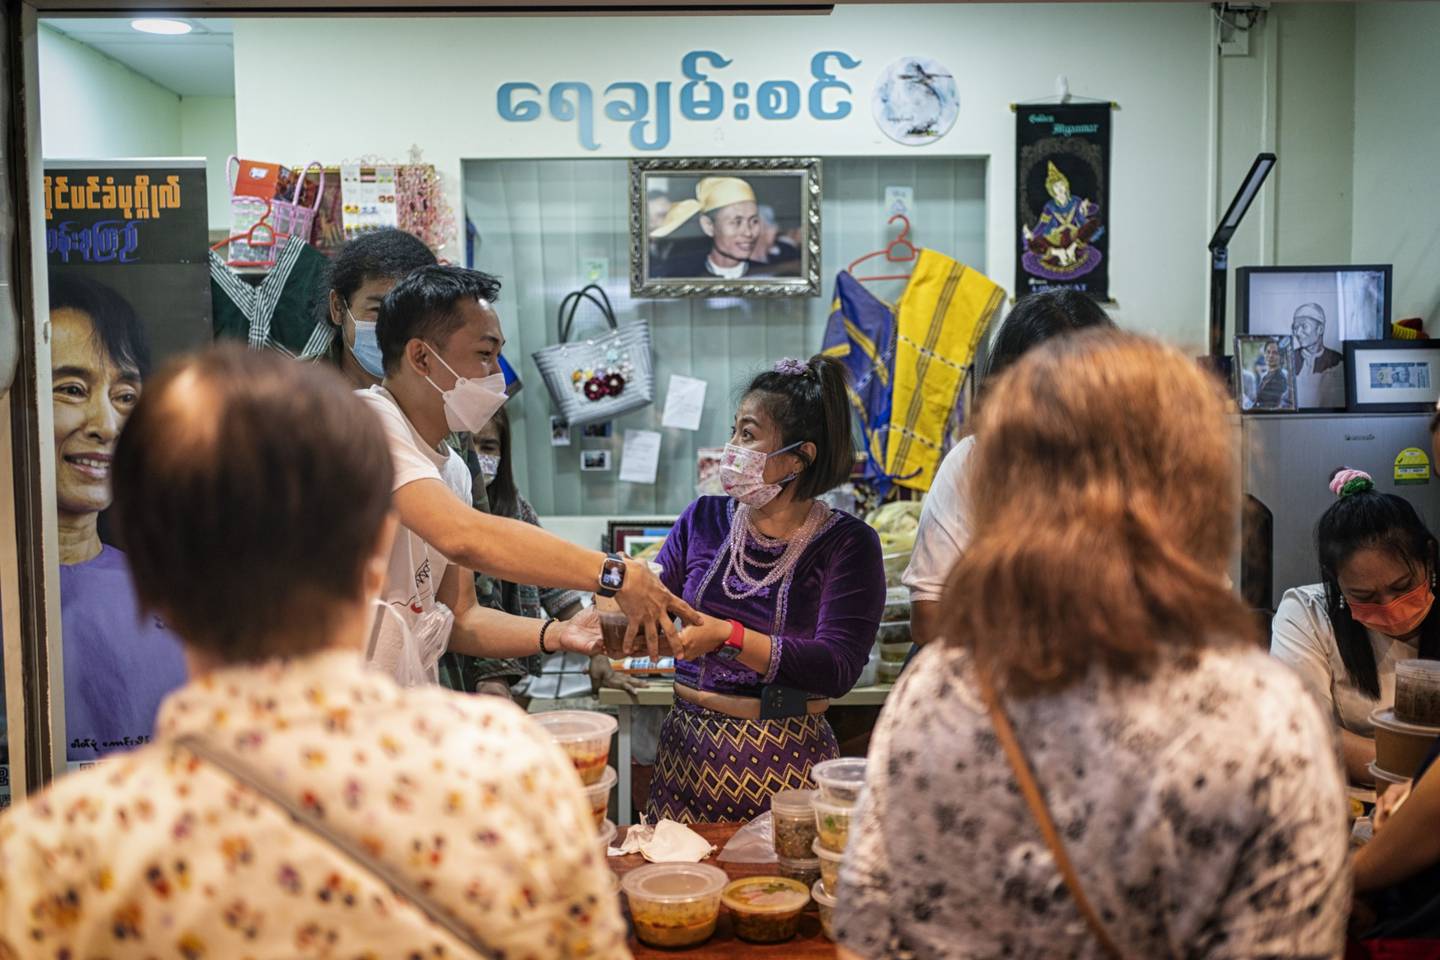 May Kyaw Soe Nyunt en su puesto en Singapur. Fotógrafo: Bryan van der Beek/Bloombergdfd